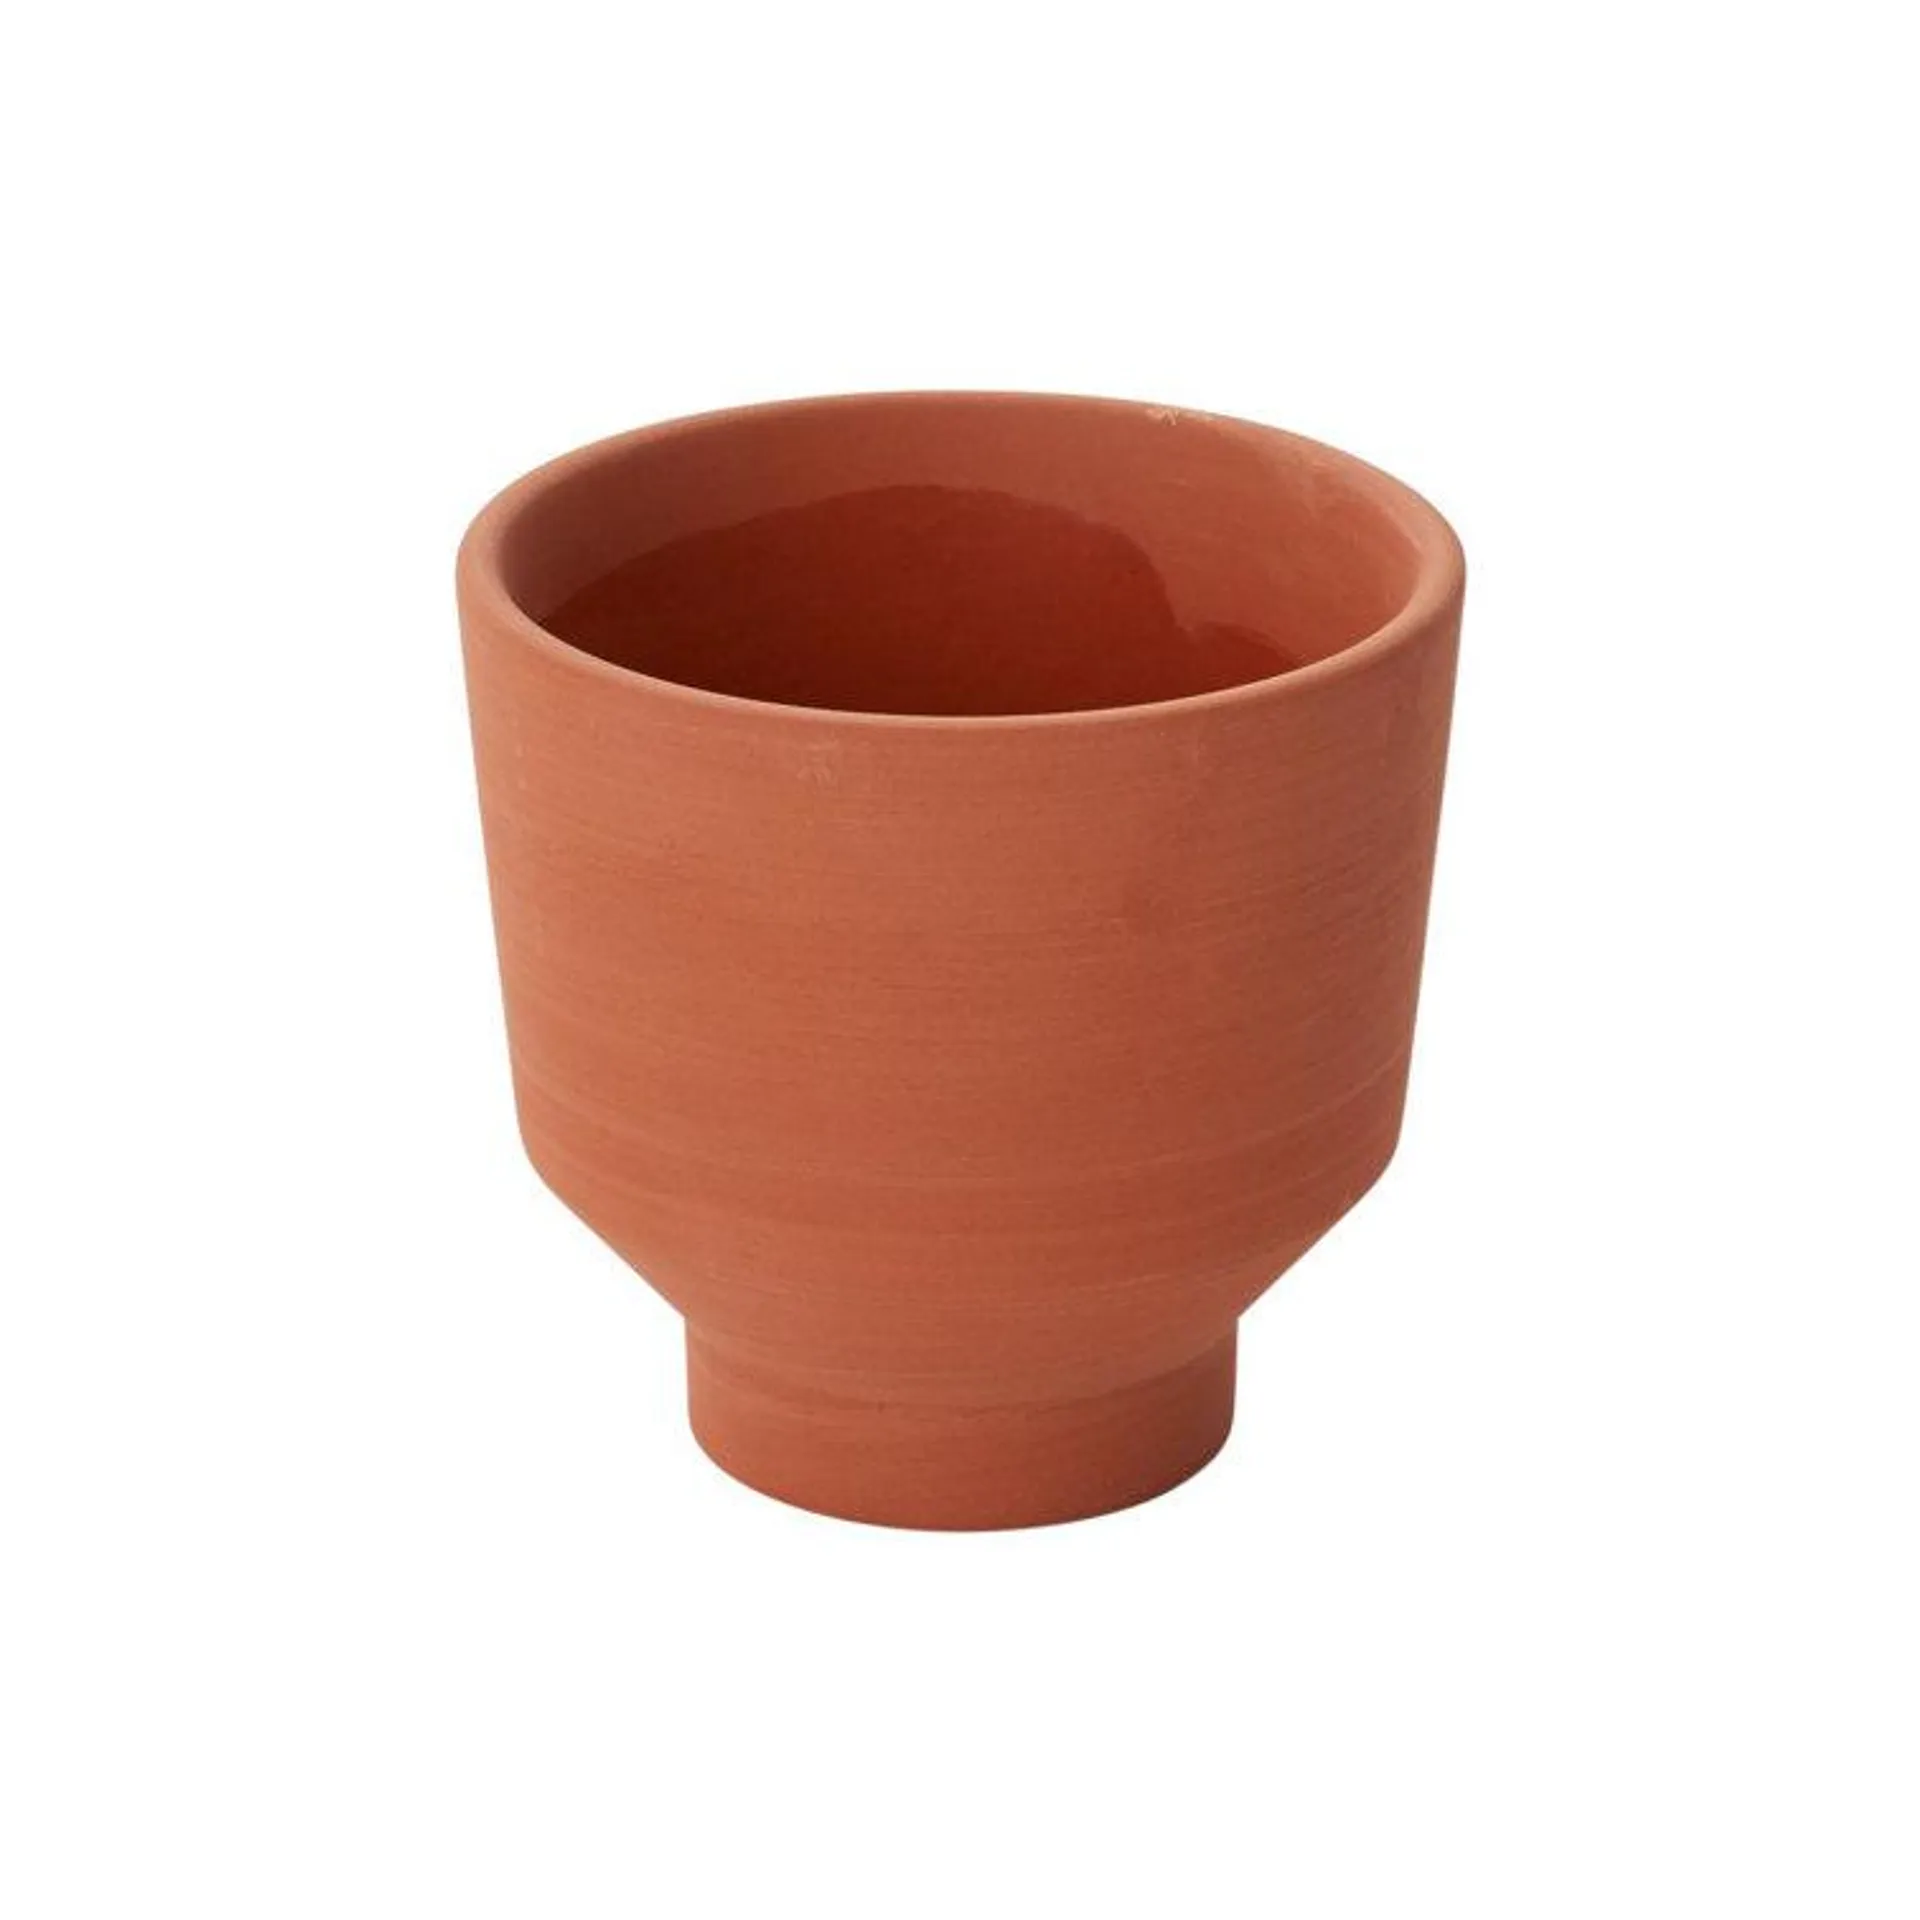 Handmade Ceramic Outdoor Pot Planter